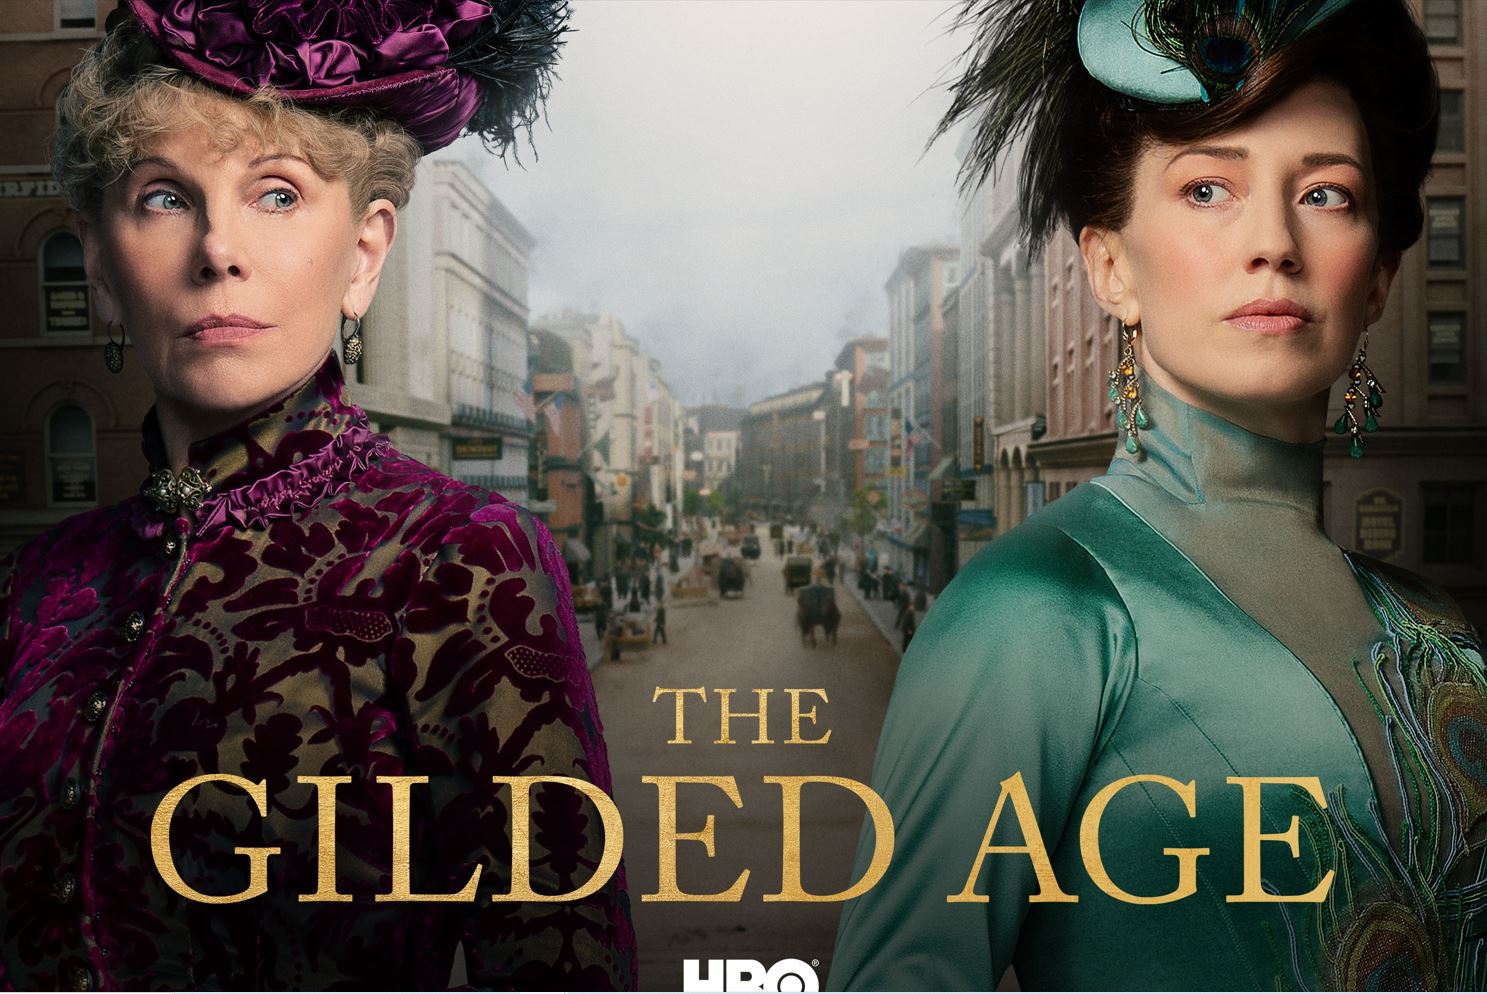 Prachtig kostuumdrama The Gilded Age over de strijd tussen oude en nieuwe  rijken - deugenieten